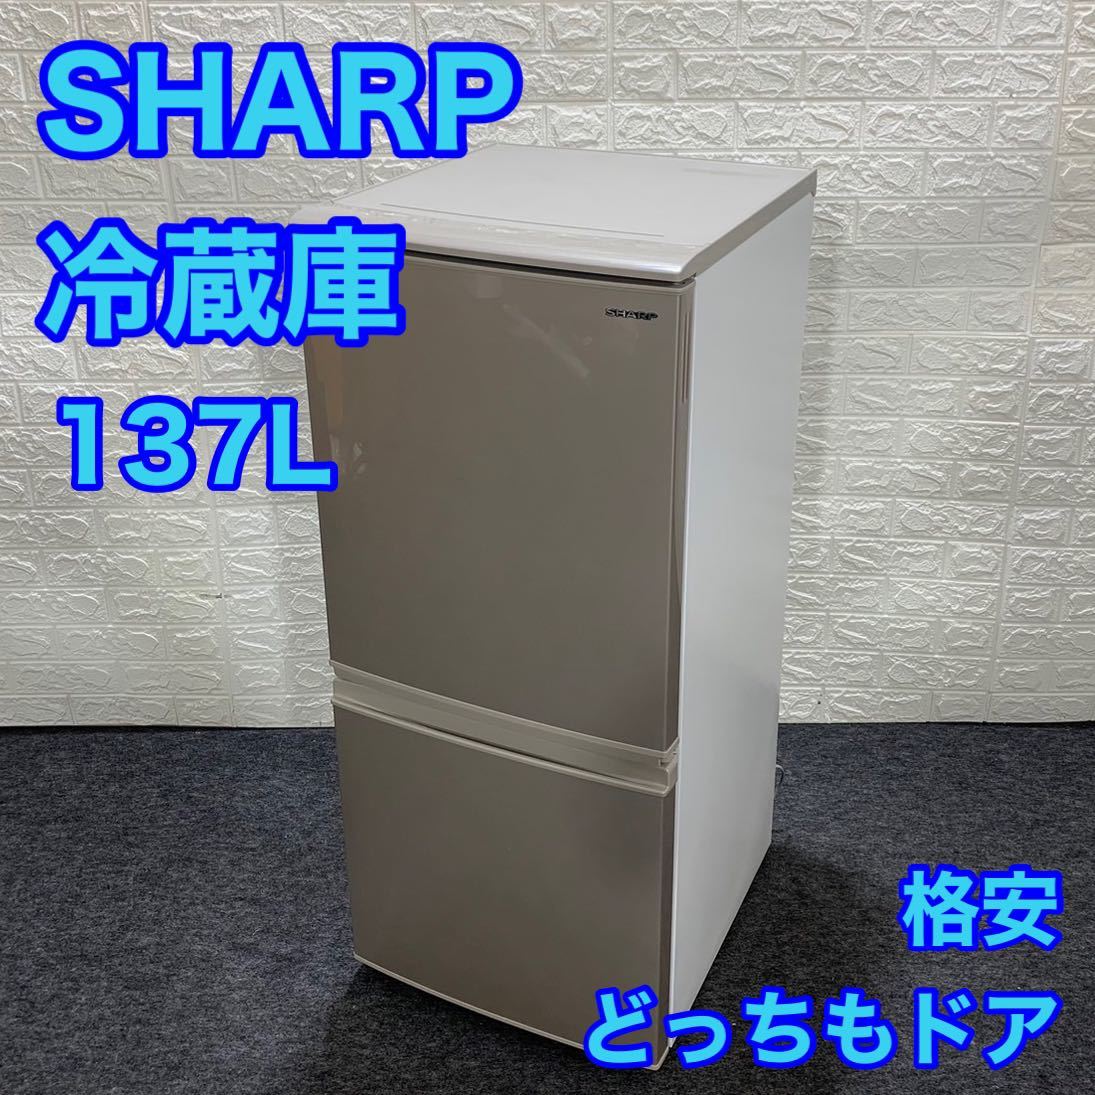 SHARP シャープ 冷蔵庫 SJ-D14E-N 137L 2019年 単身用 d1012 冷凍冷蔵庫 2ドア どっちもドア 一人暮らし 格安 お買い得